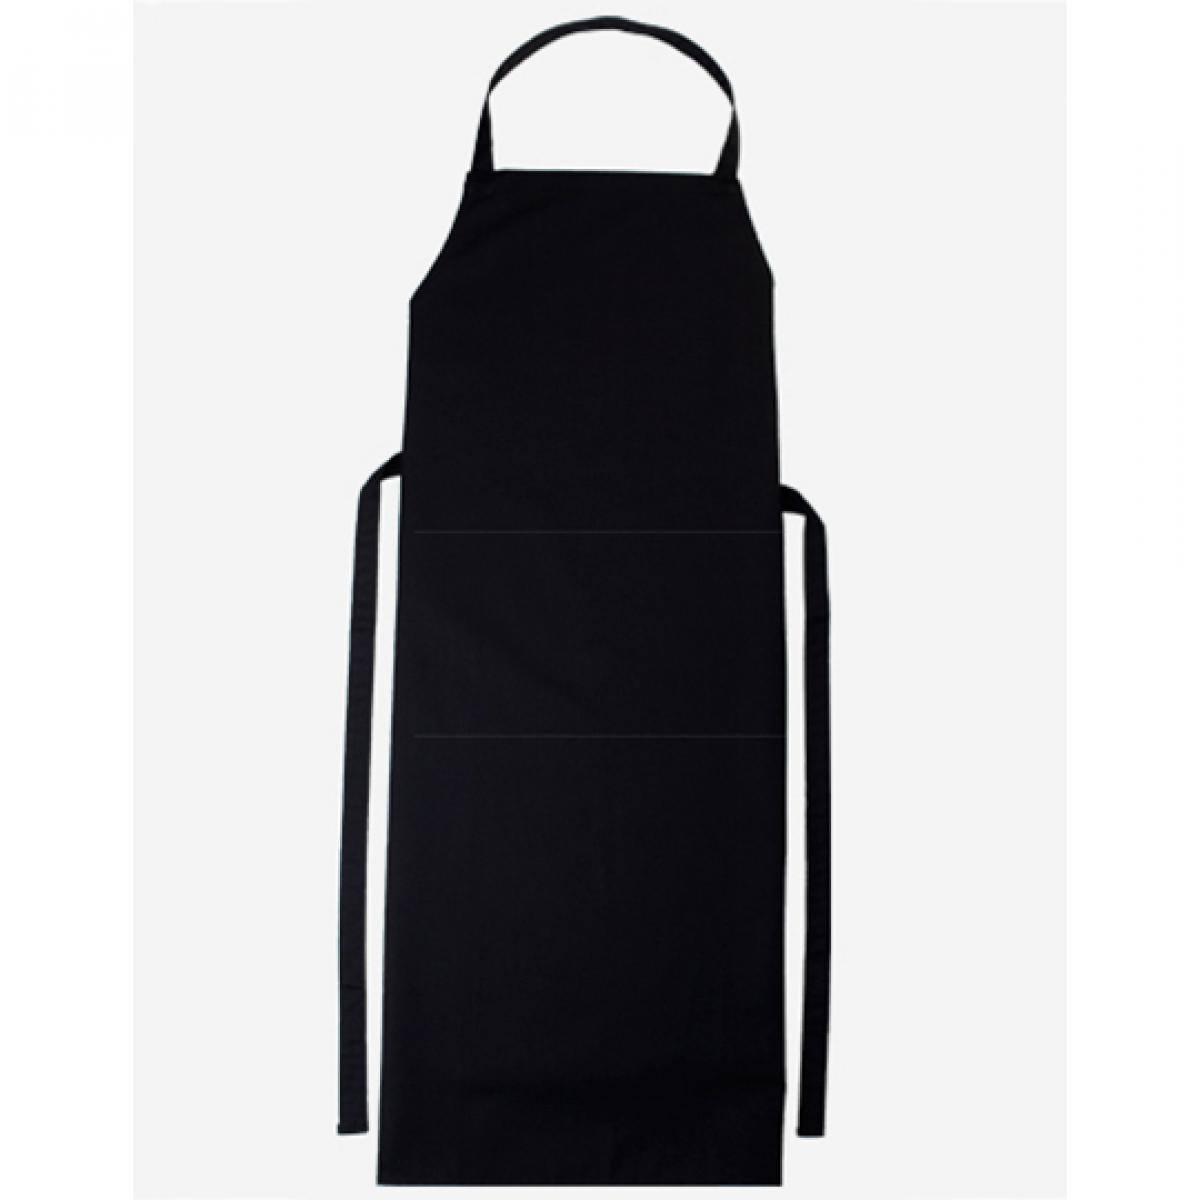 Hersteller: CG Workwear Herstellernummer: 01146-01 Artikelbezeichnung: Latzschürze Verona Classic Bag 90 x 75 cm Farbe: Black